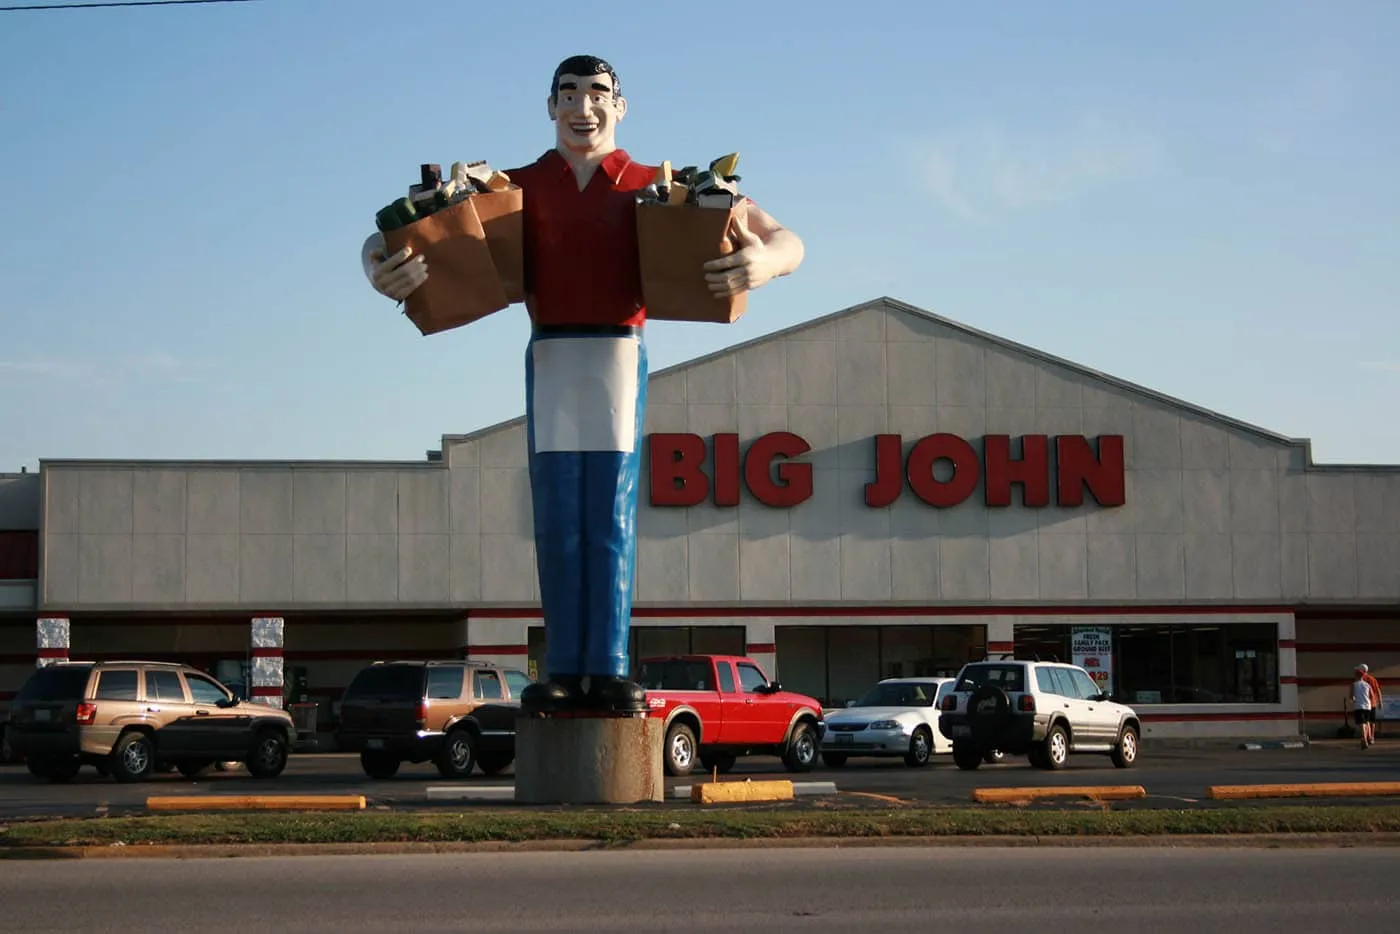 Big John Grocery Clerk in Metropolis, Illinois